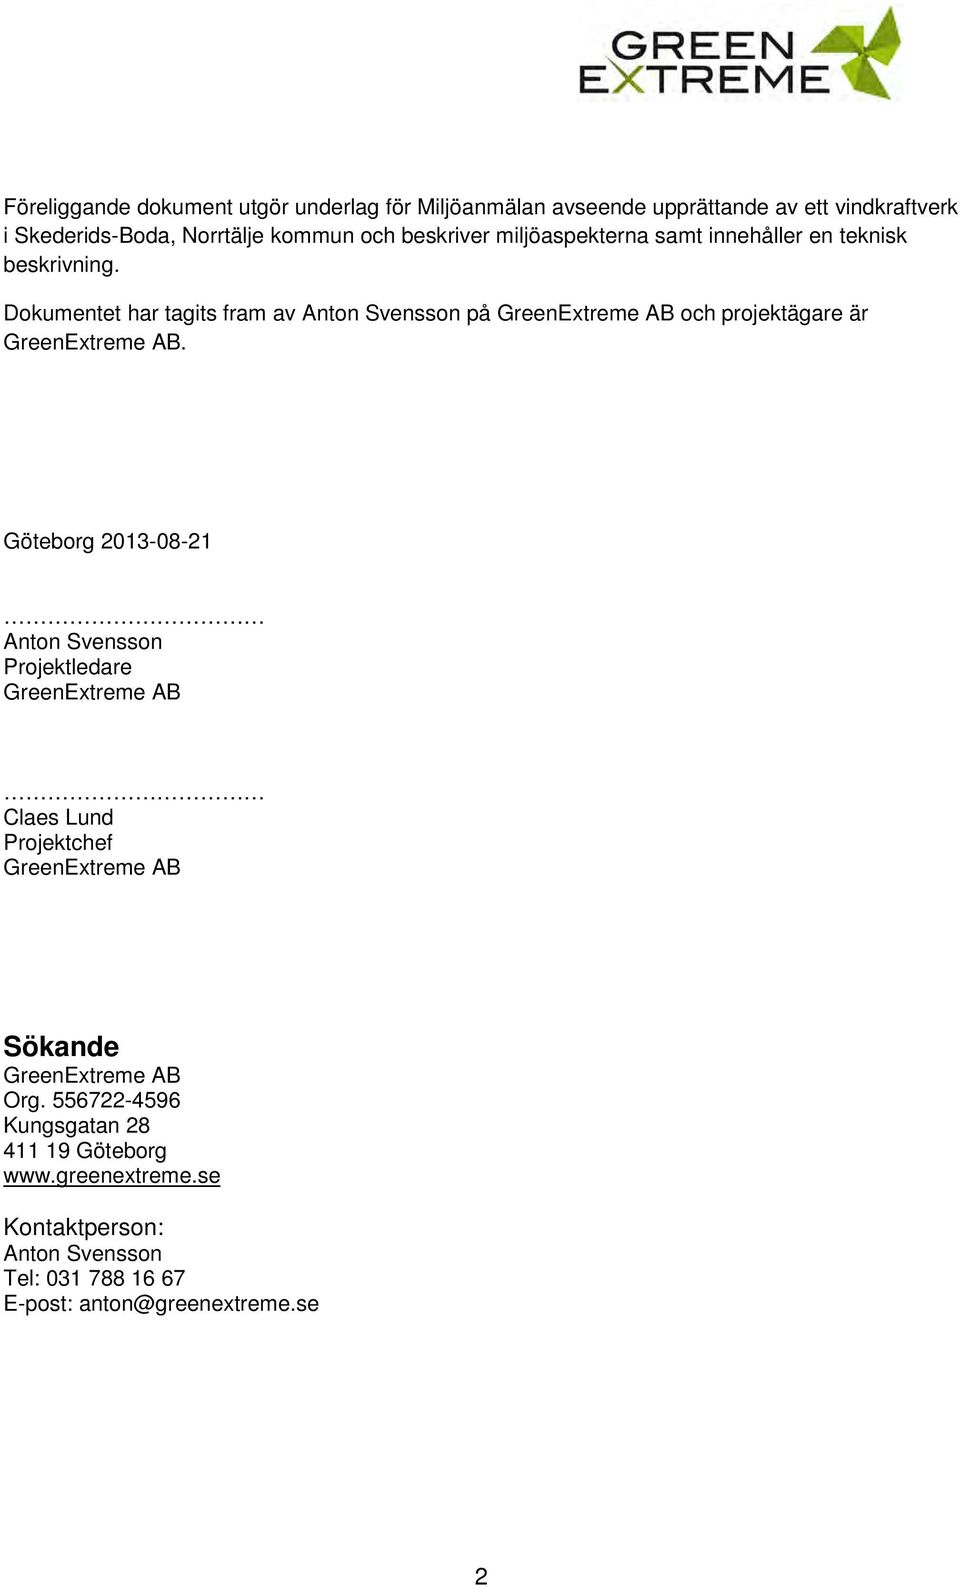 Dokumentet har tagits fram av Anton Svensson på GreenExtreme AB och projektägare är GreenExtreme AB.